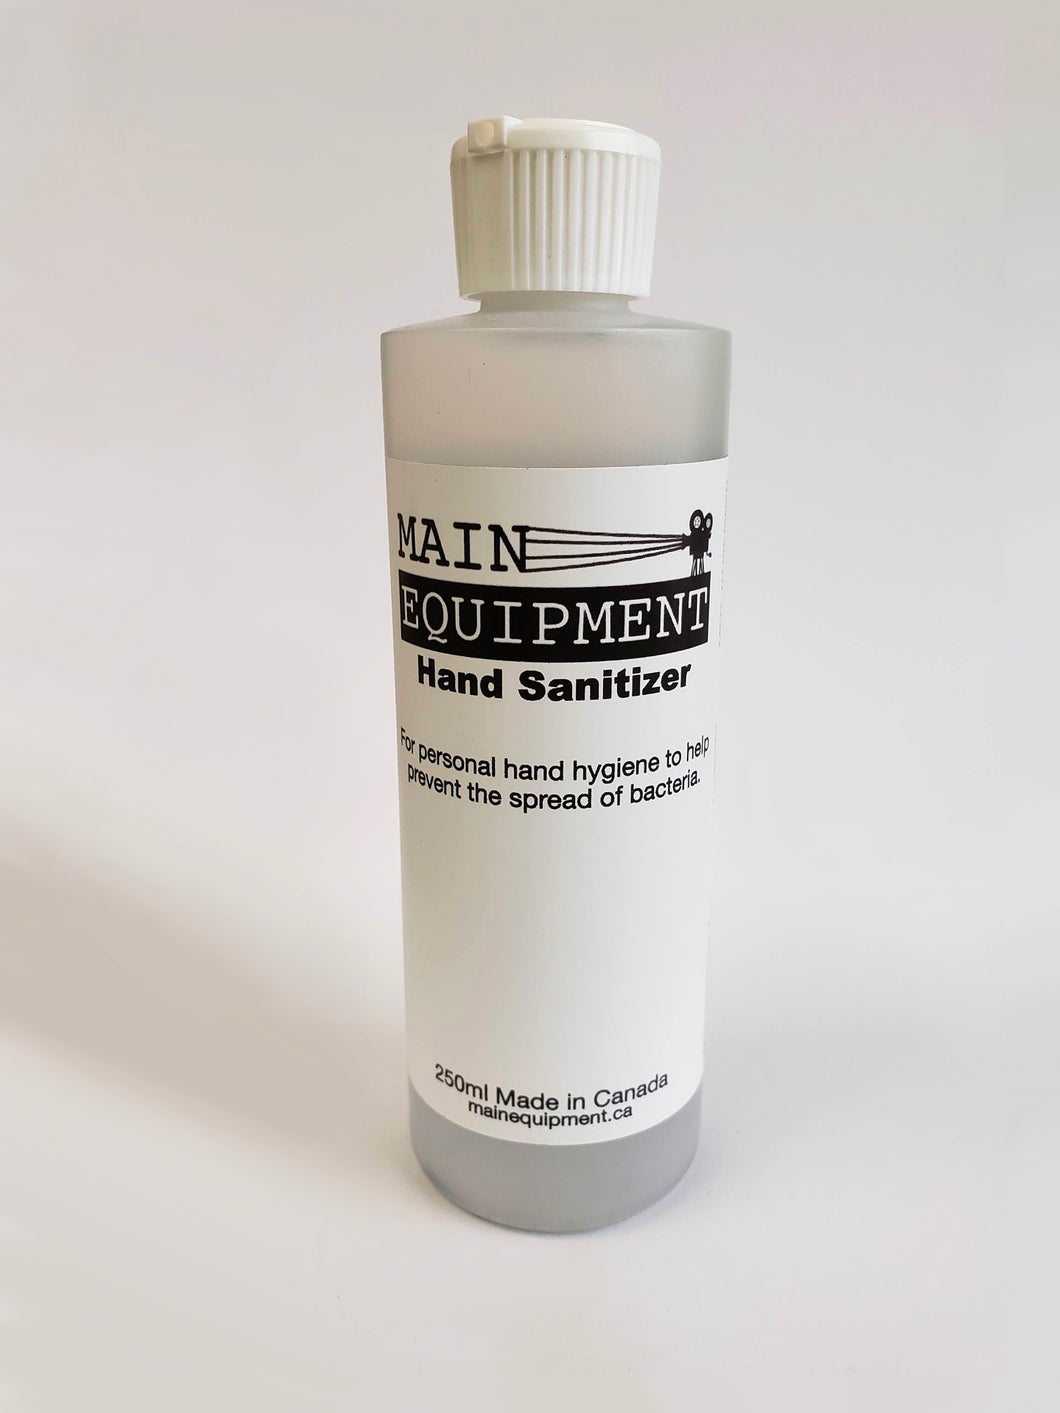 Hand Sanitizer - Main Equipment - 250mL